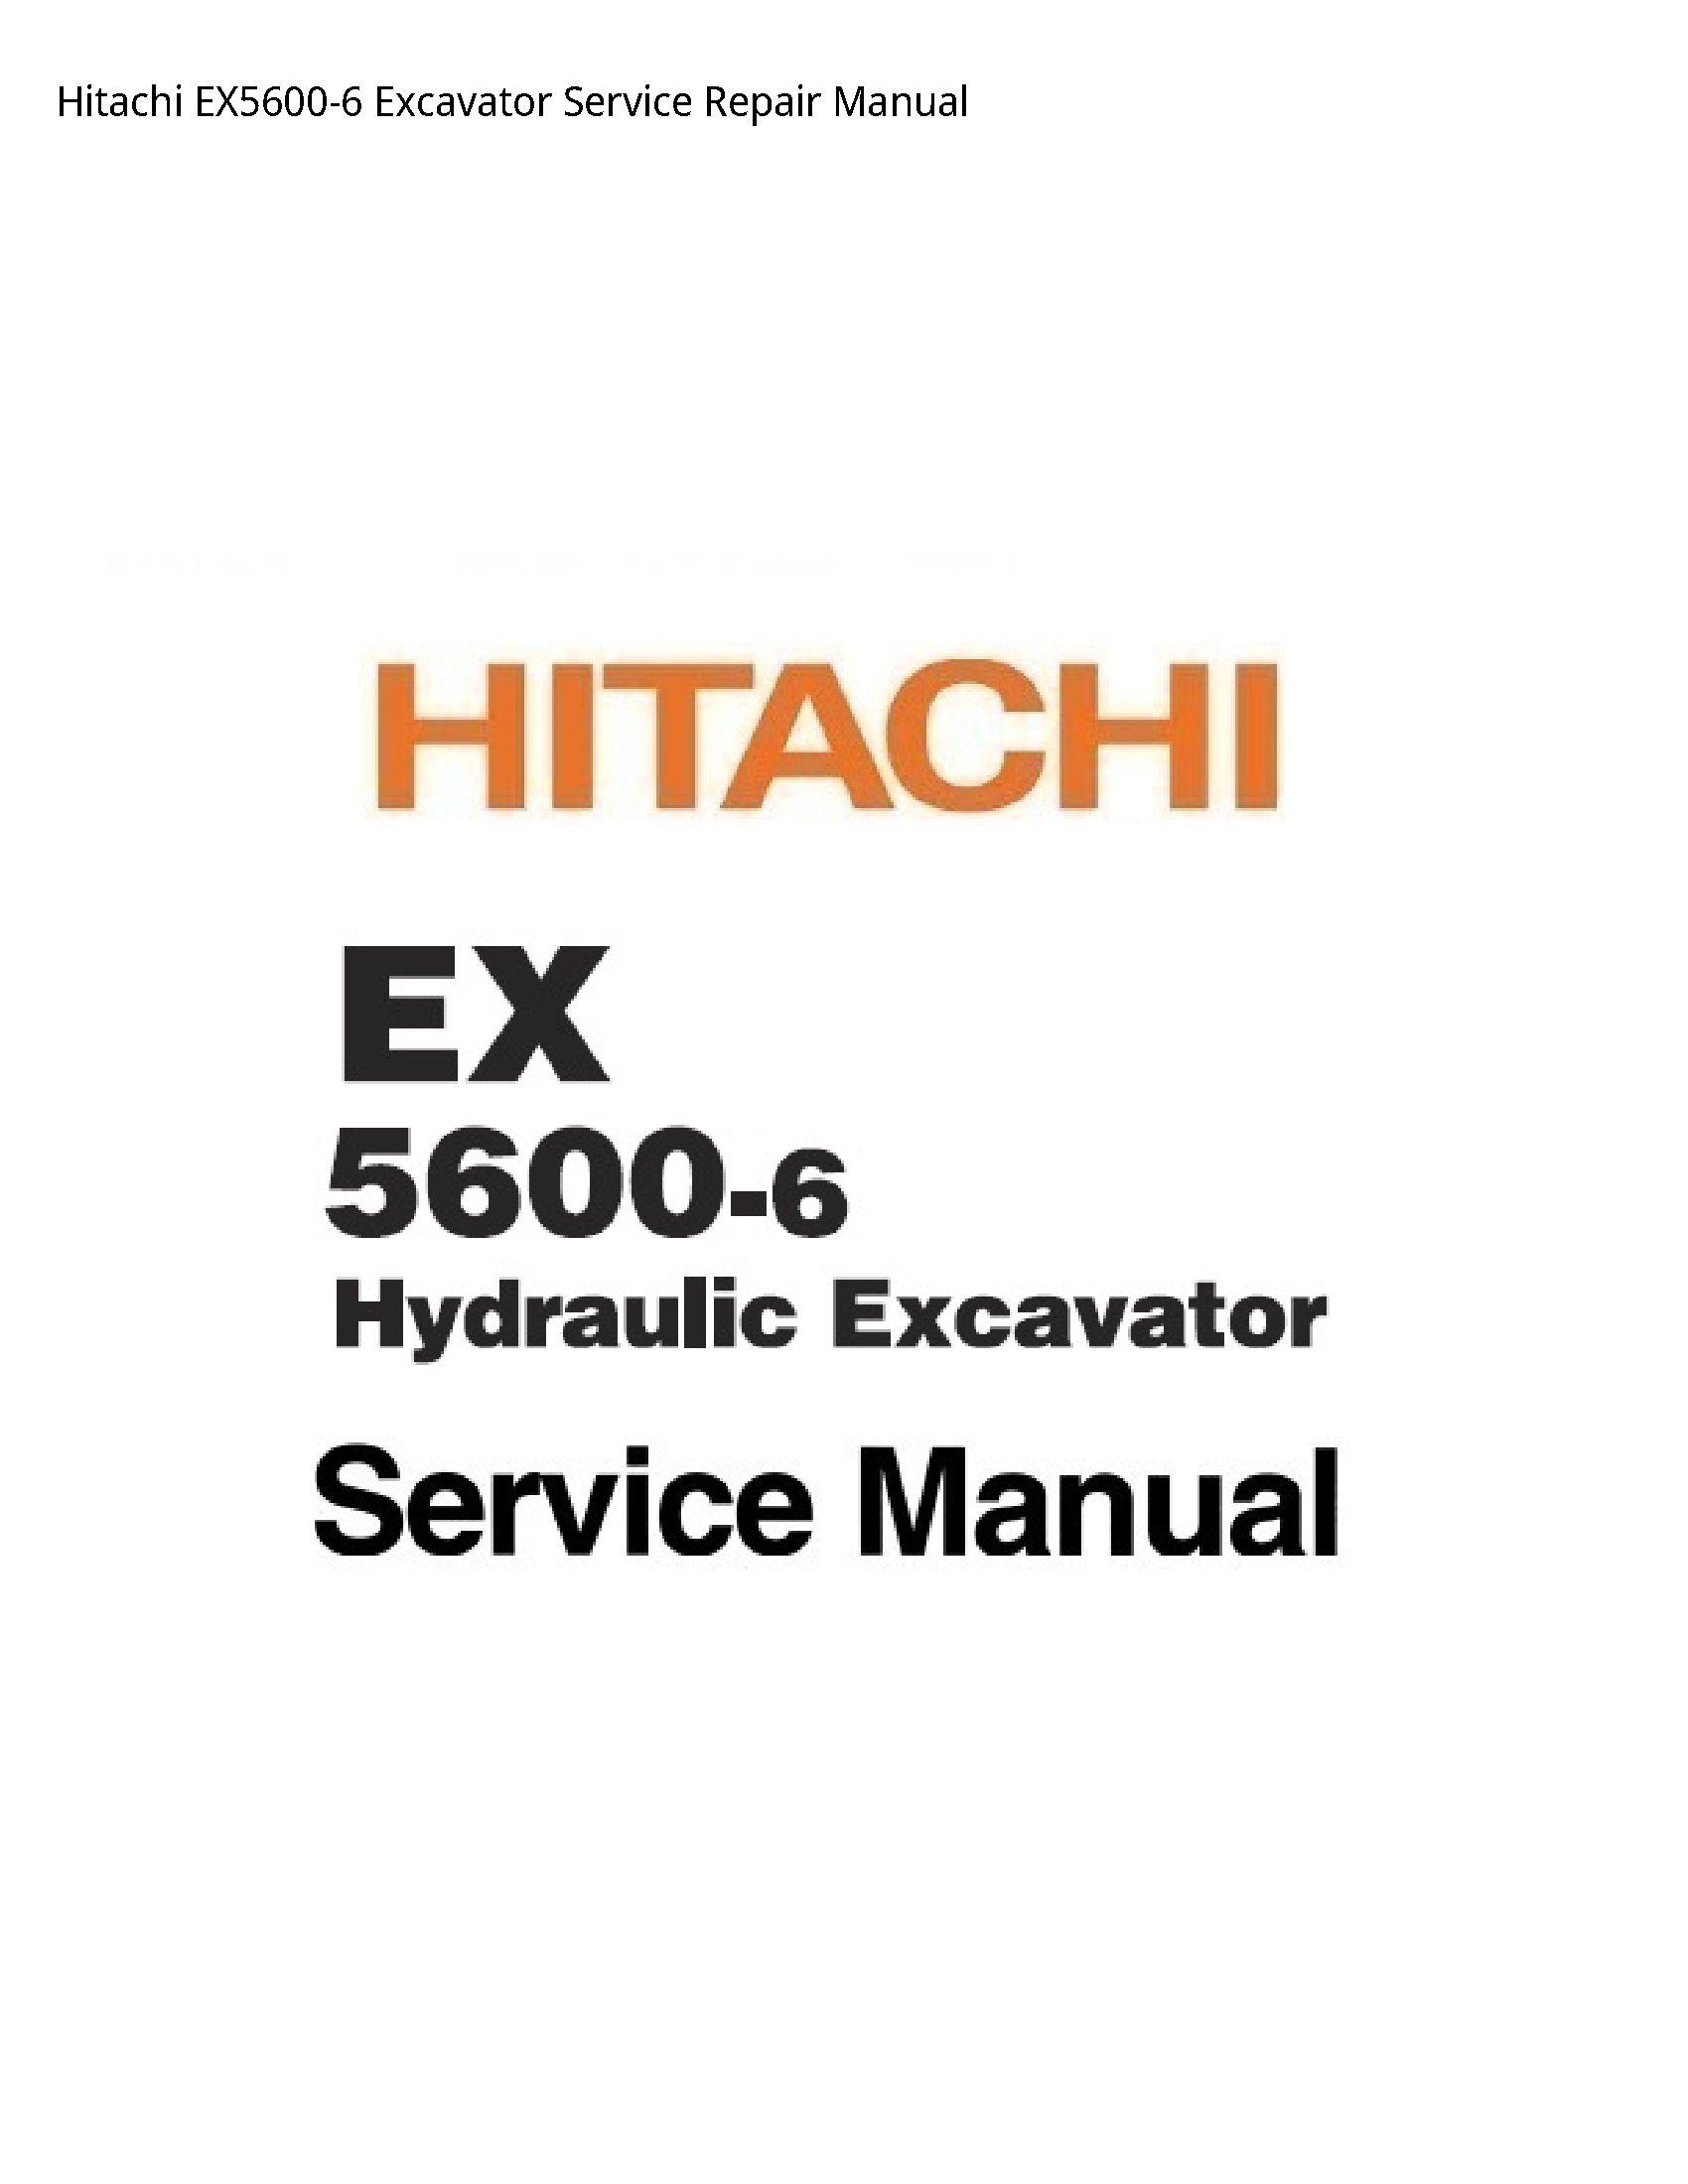 Hitachi EX5600-6 Excavator manual